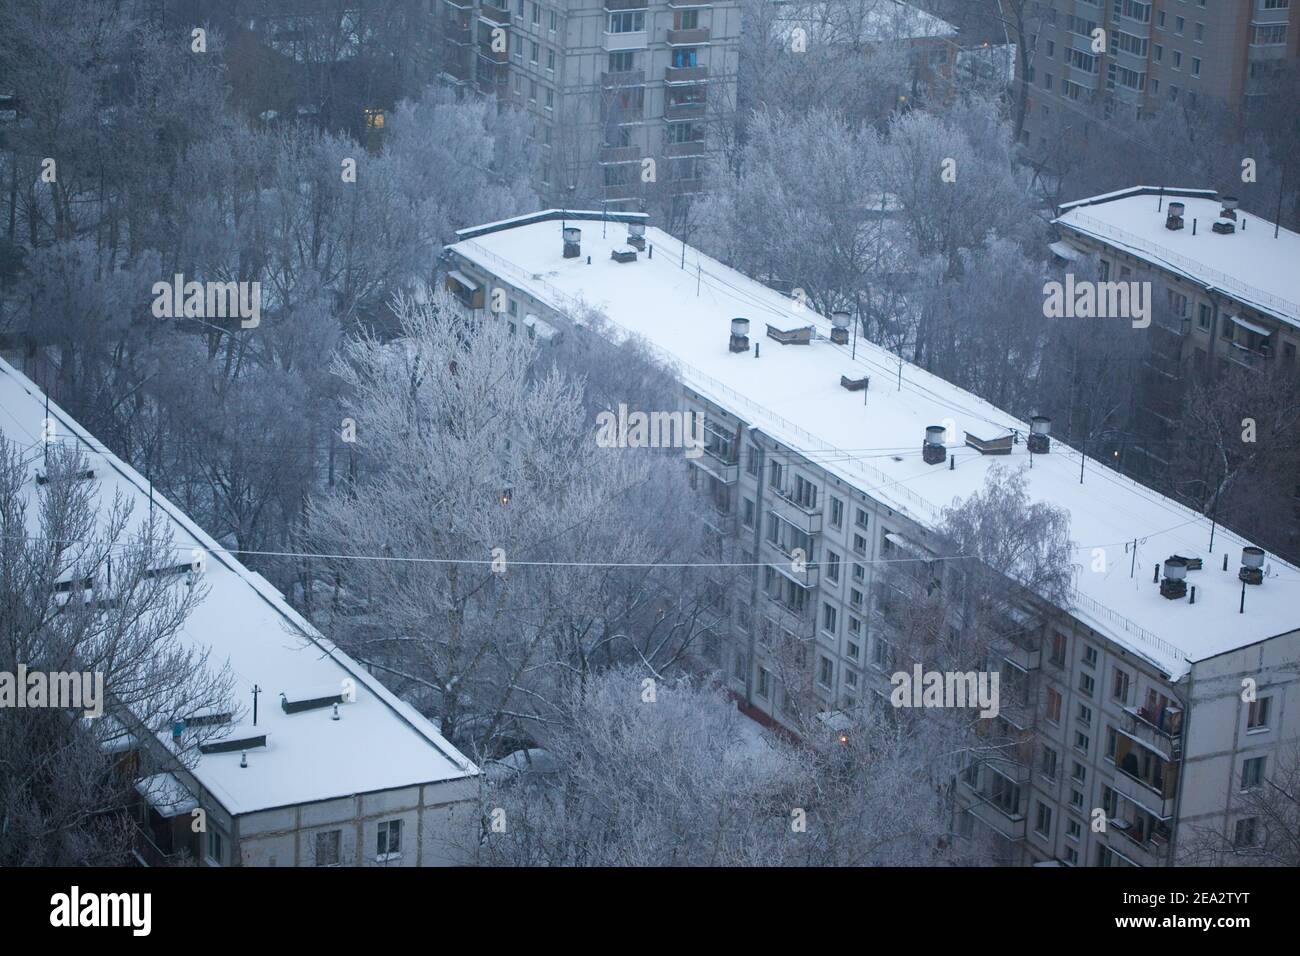 MOSCOU, RUSSIE : vue de dessus des bâtiments de cinq étages en hiver. Ton bleu. La Russie froisse le concept Banque D'Images